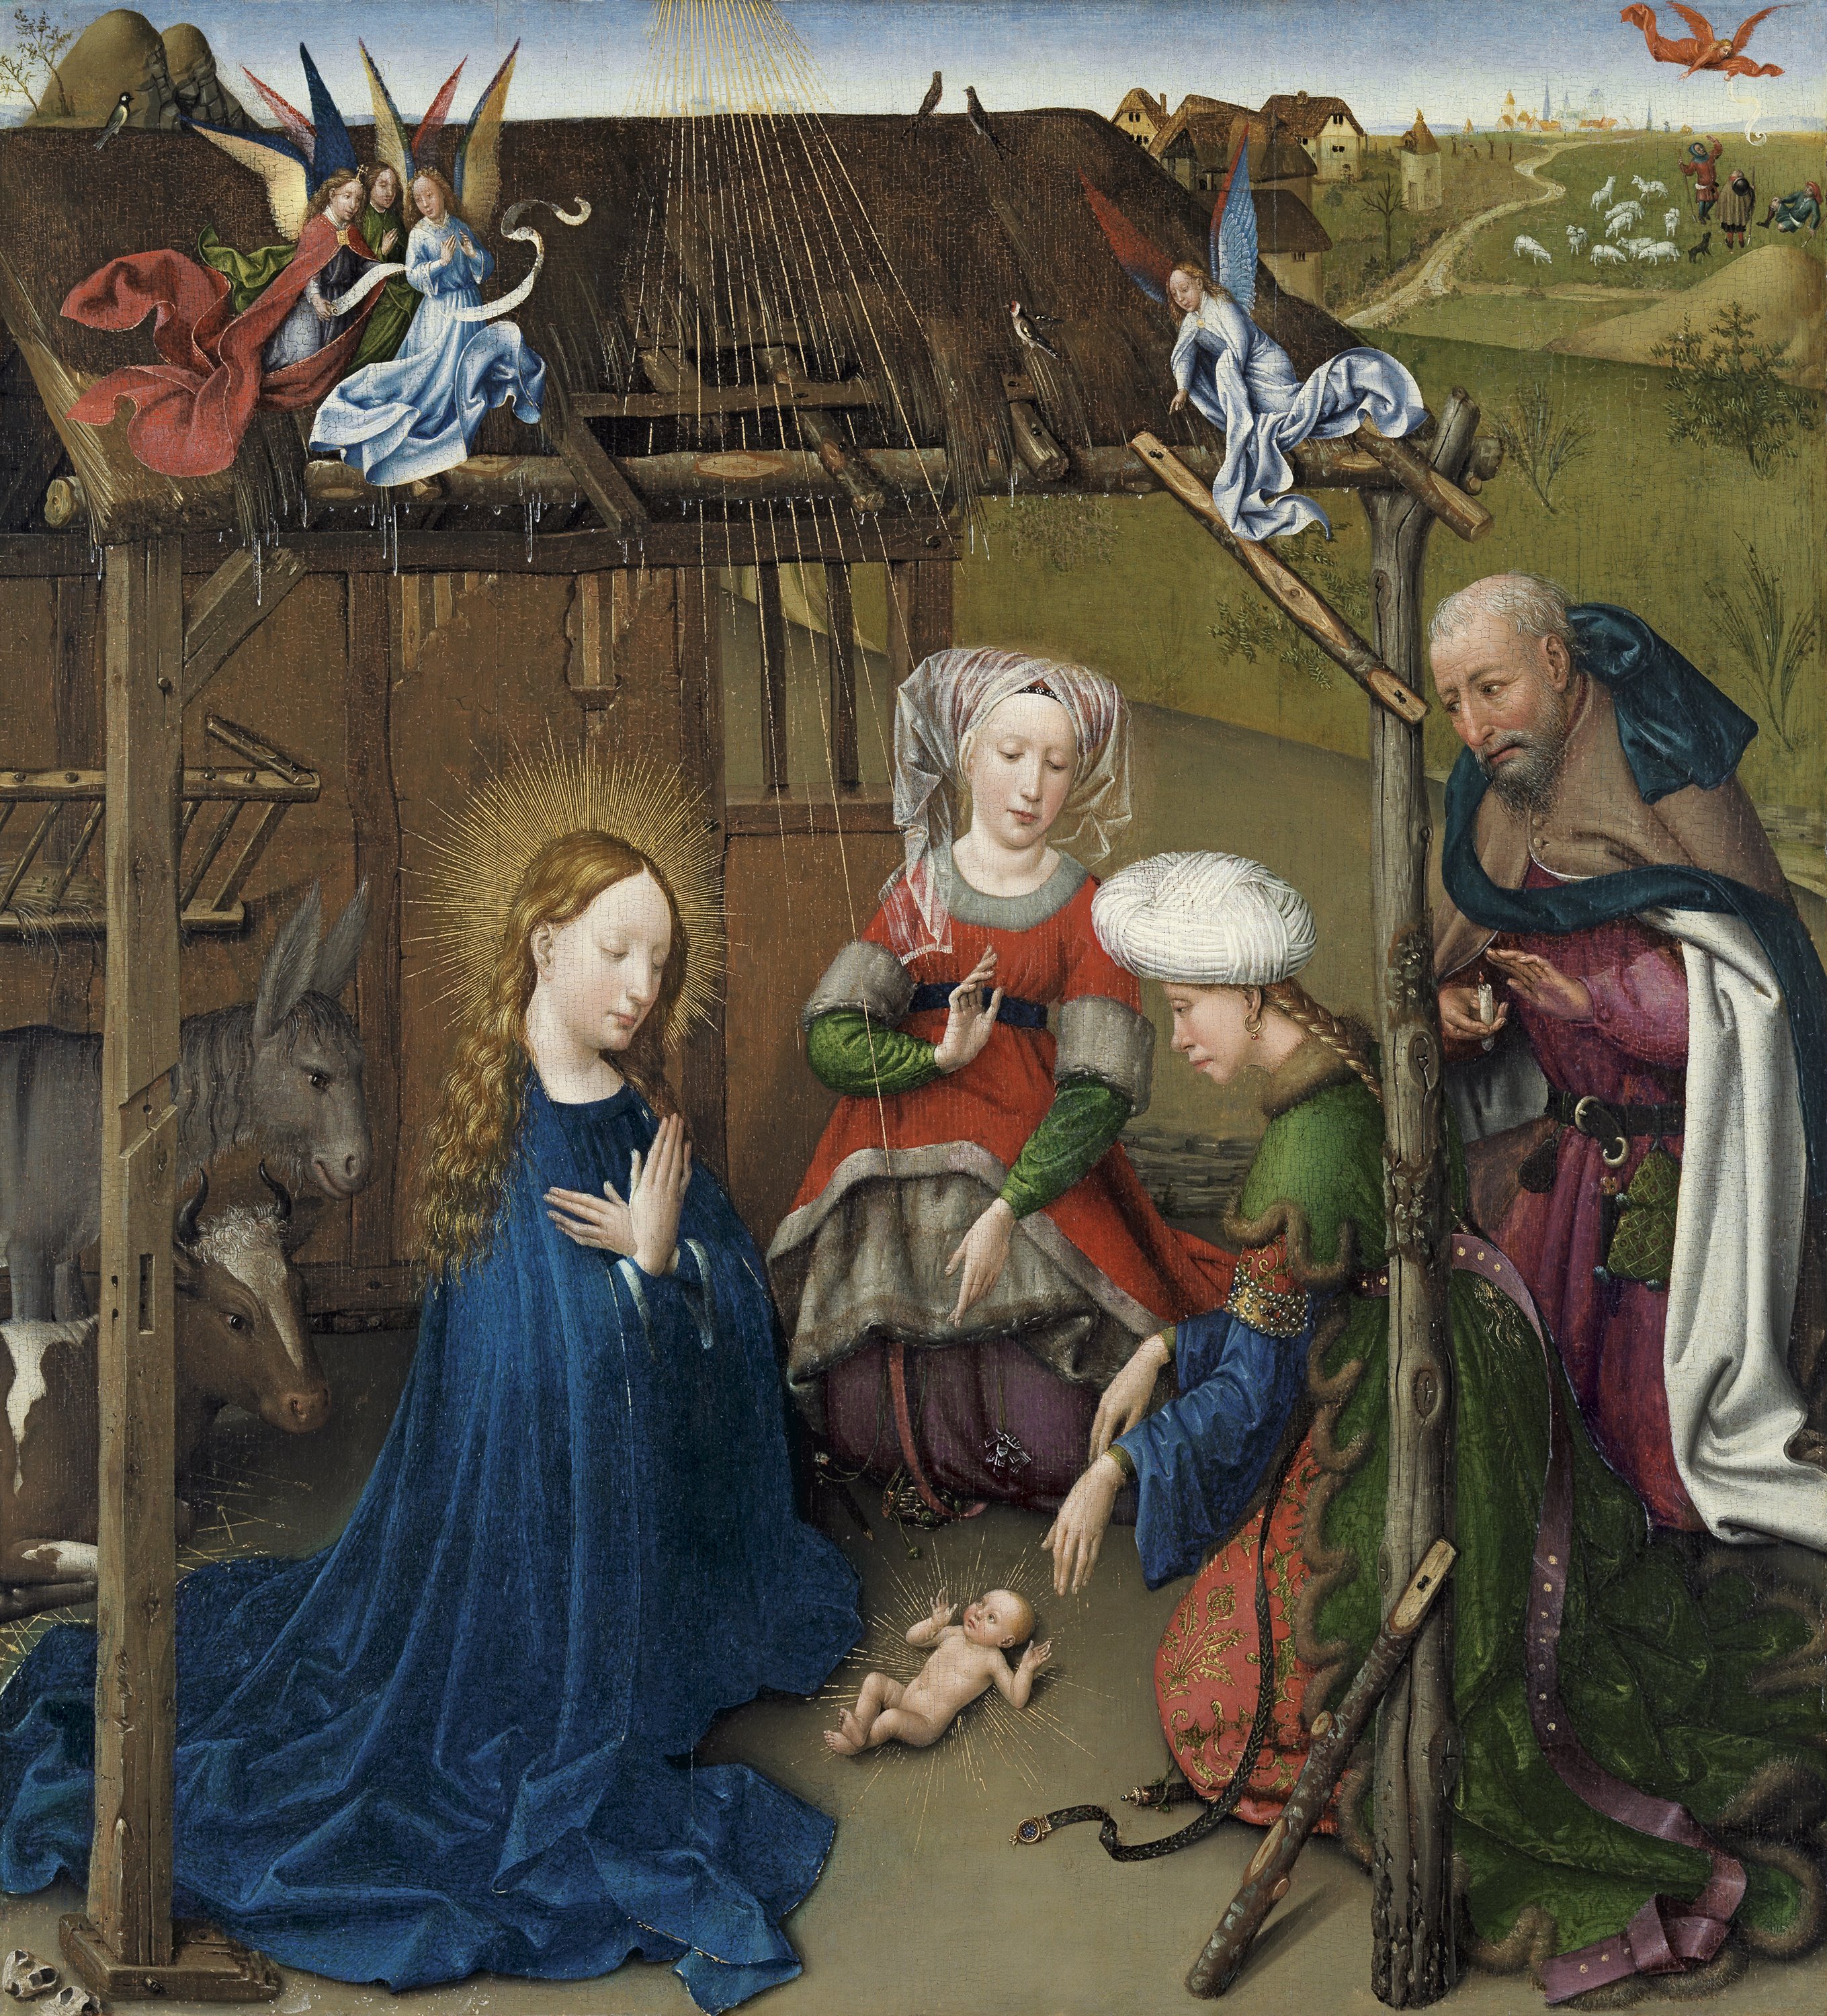 The Nativity. La Adoración del Niño, c. 1434-1435